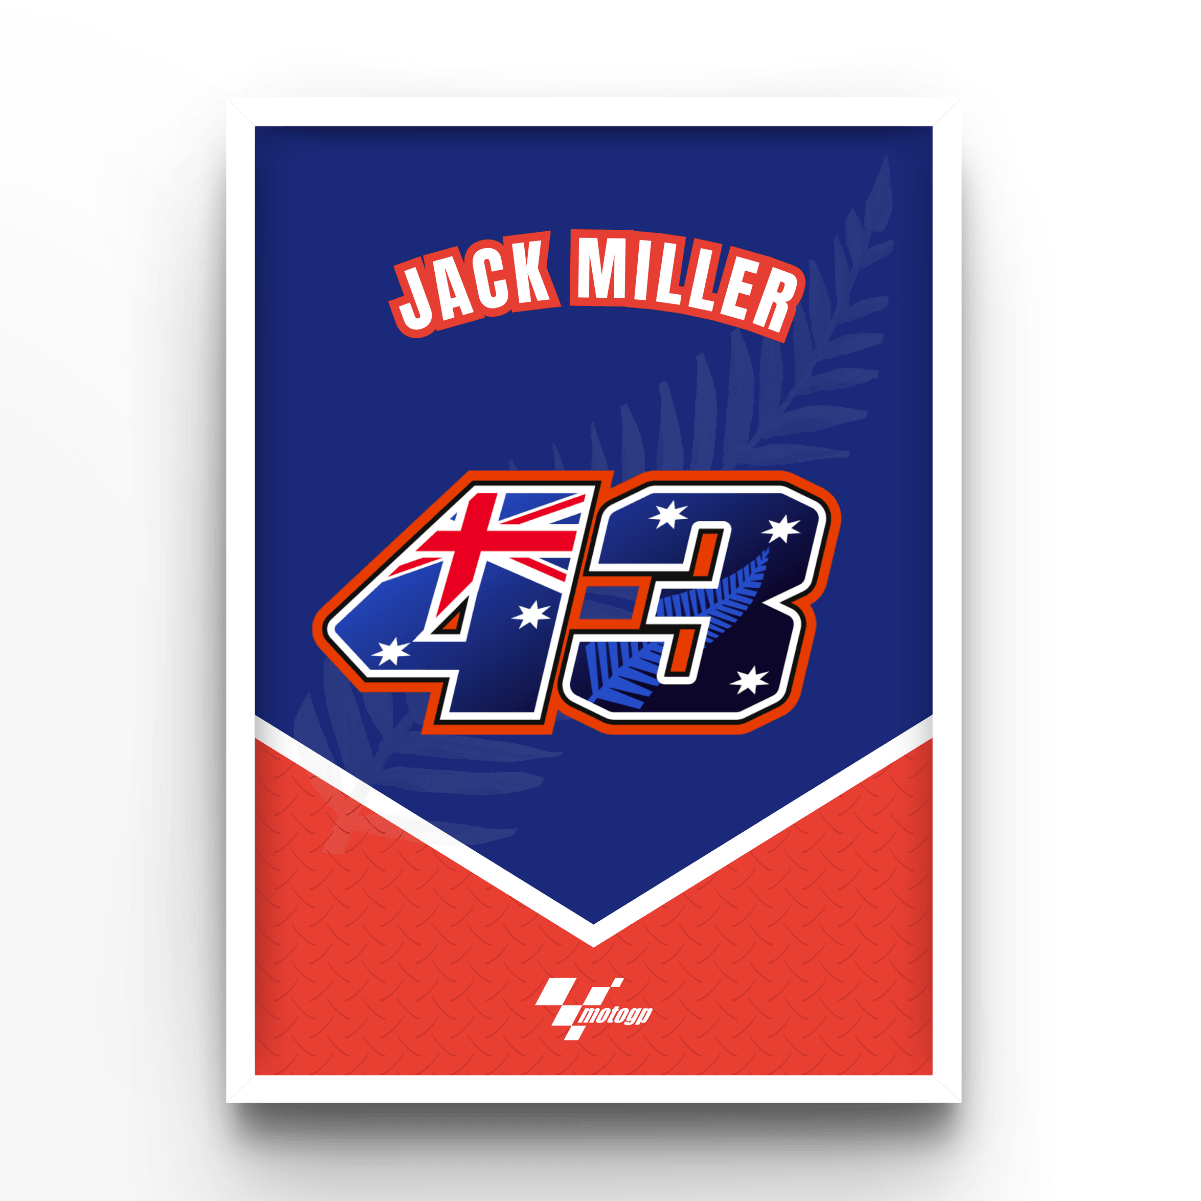 Jack Miller - A4, A3, A2 Posters Base - Poster Print Shop / Art Prints / PostersBase